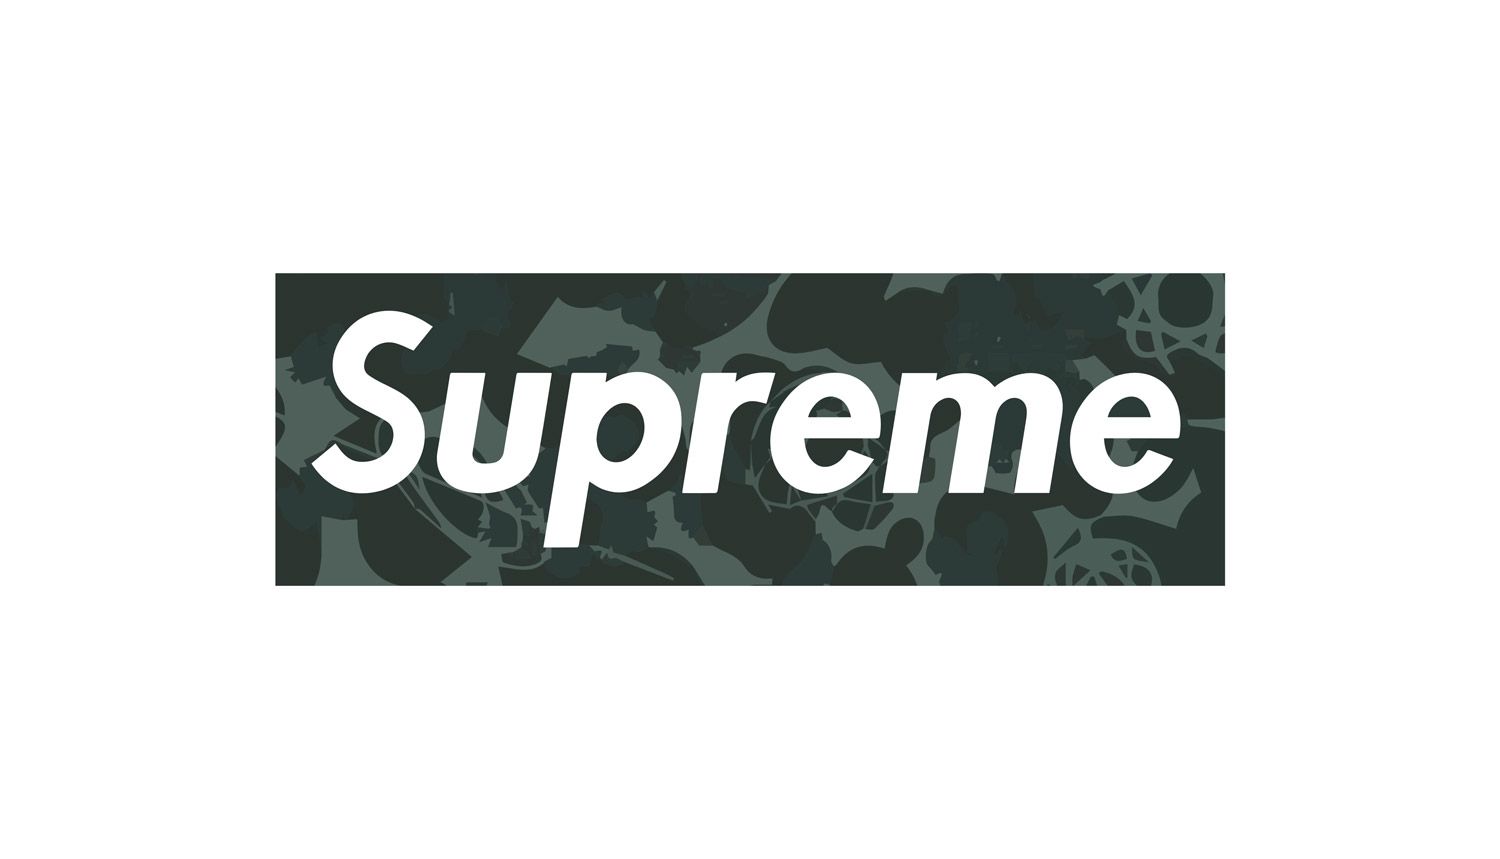 Download Black Supreme Classic White Logo Wallpaper